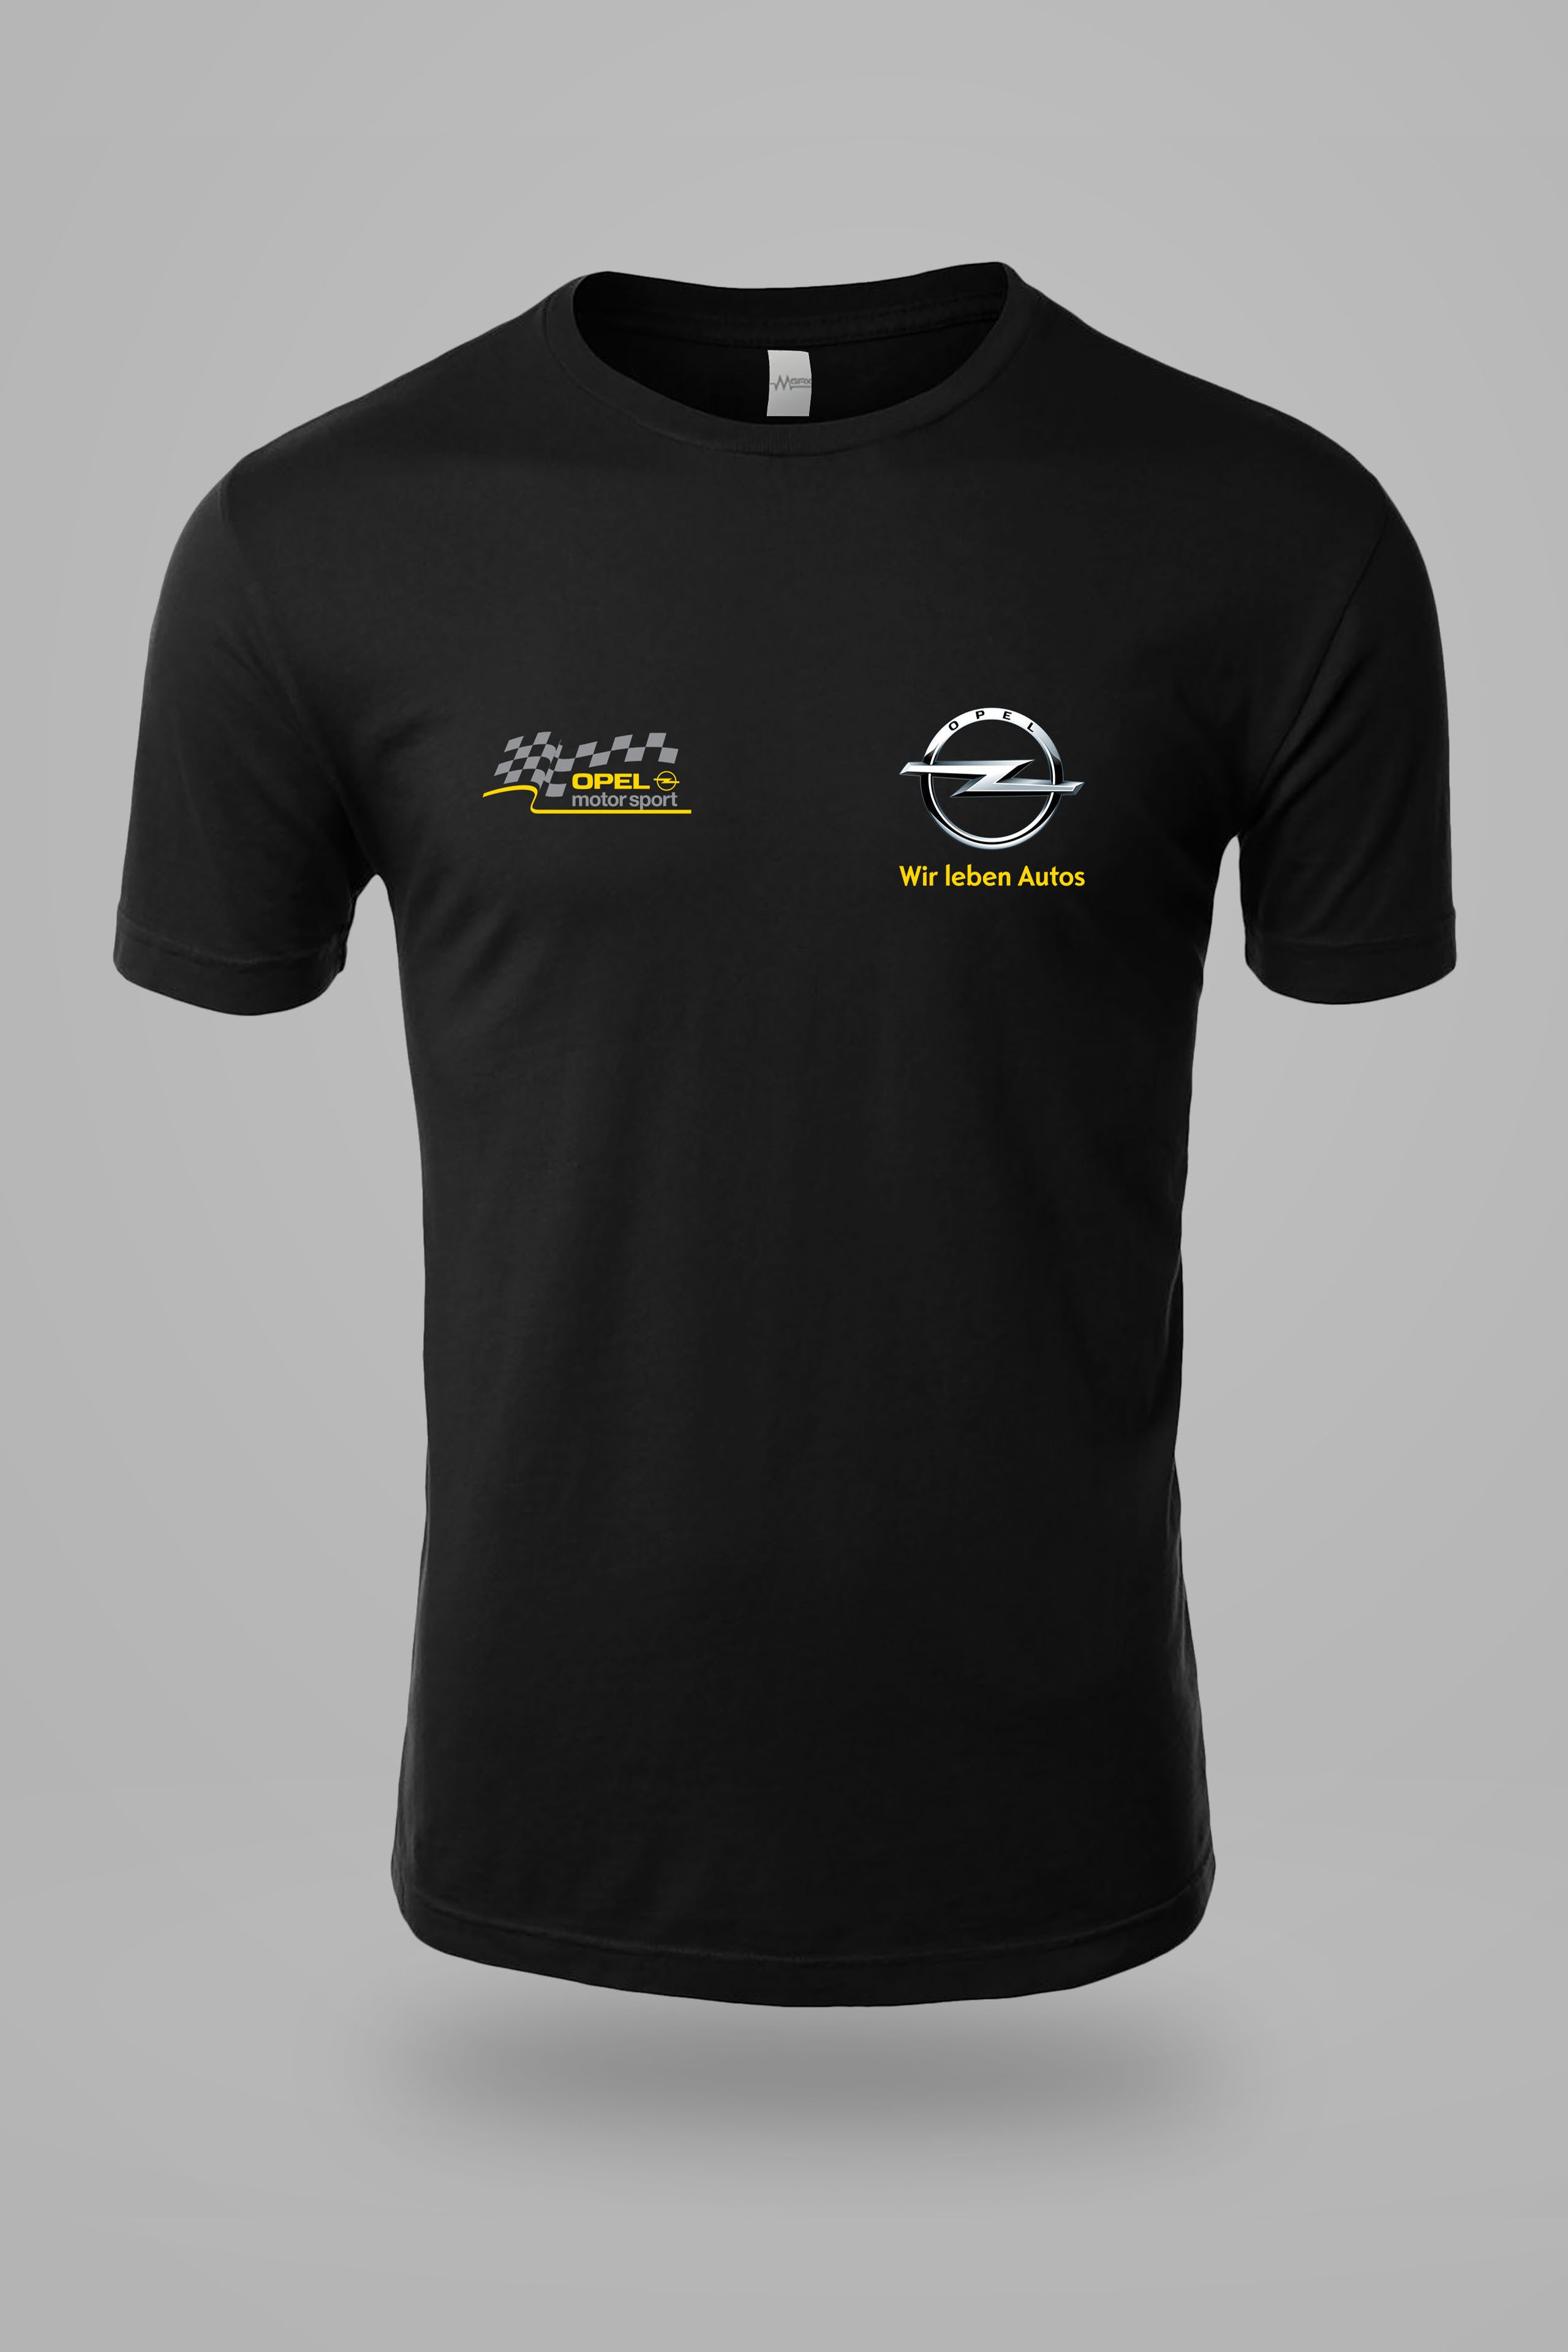 Opel Motorsport Baskılı Tişört